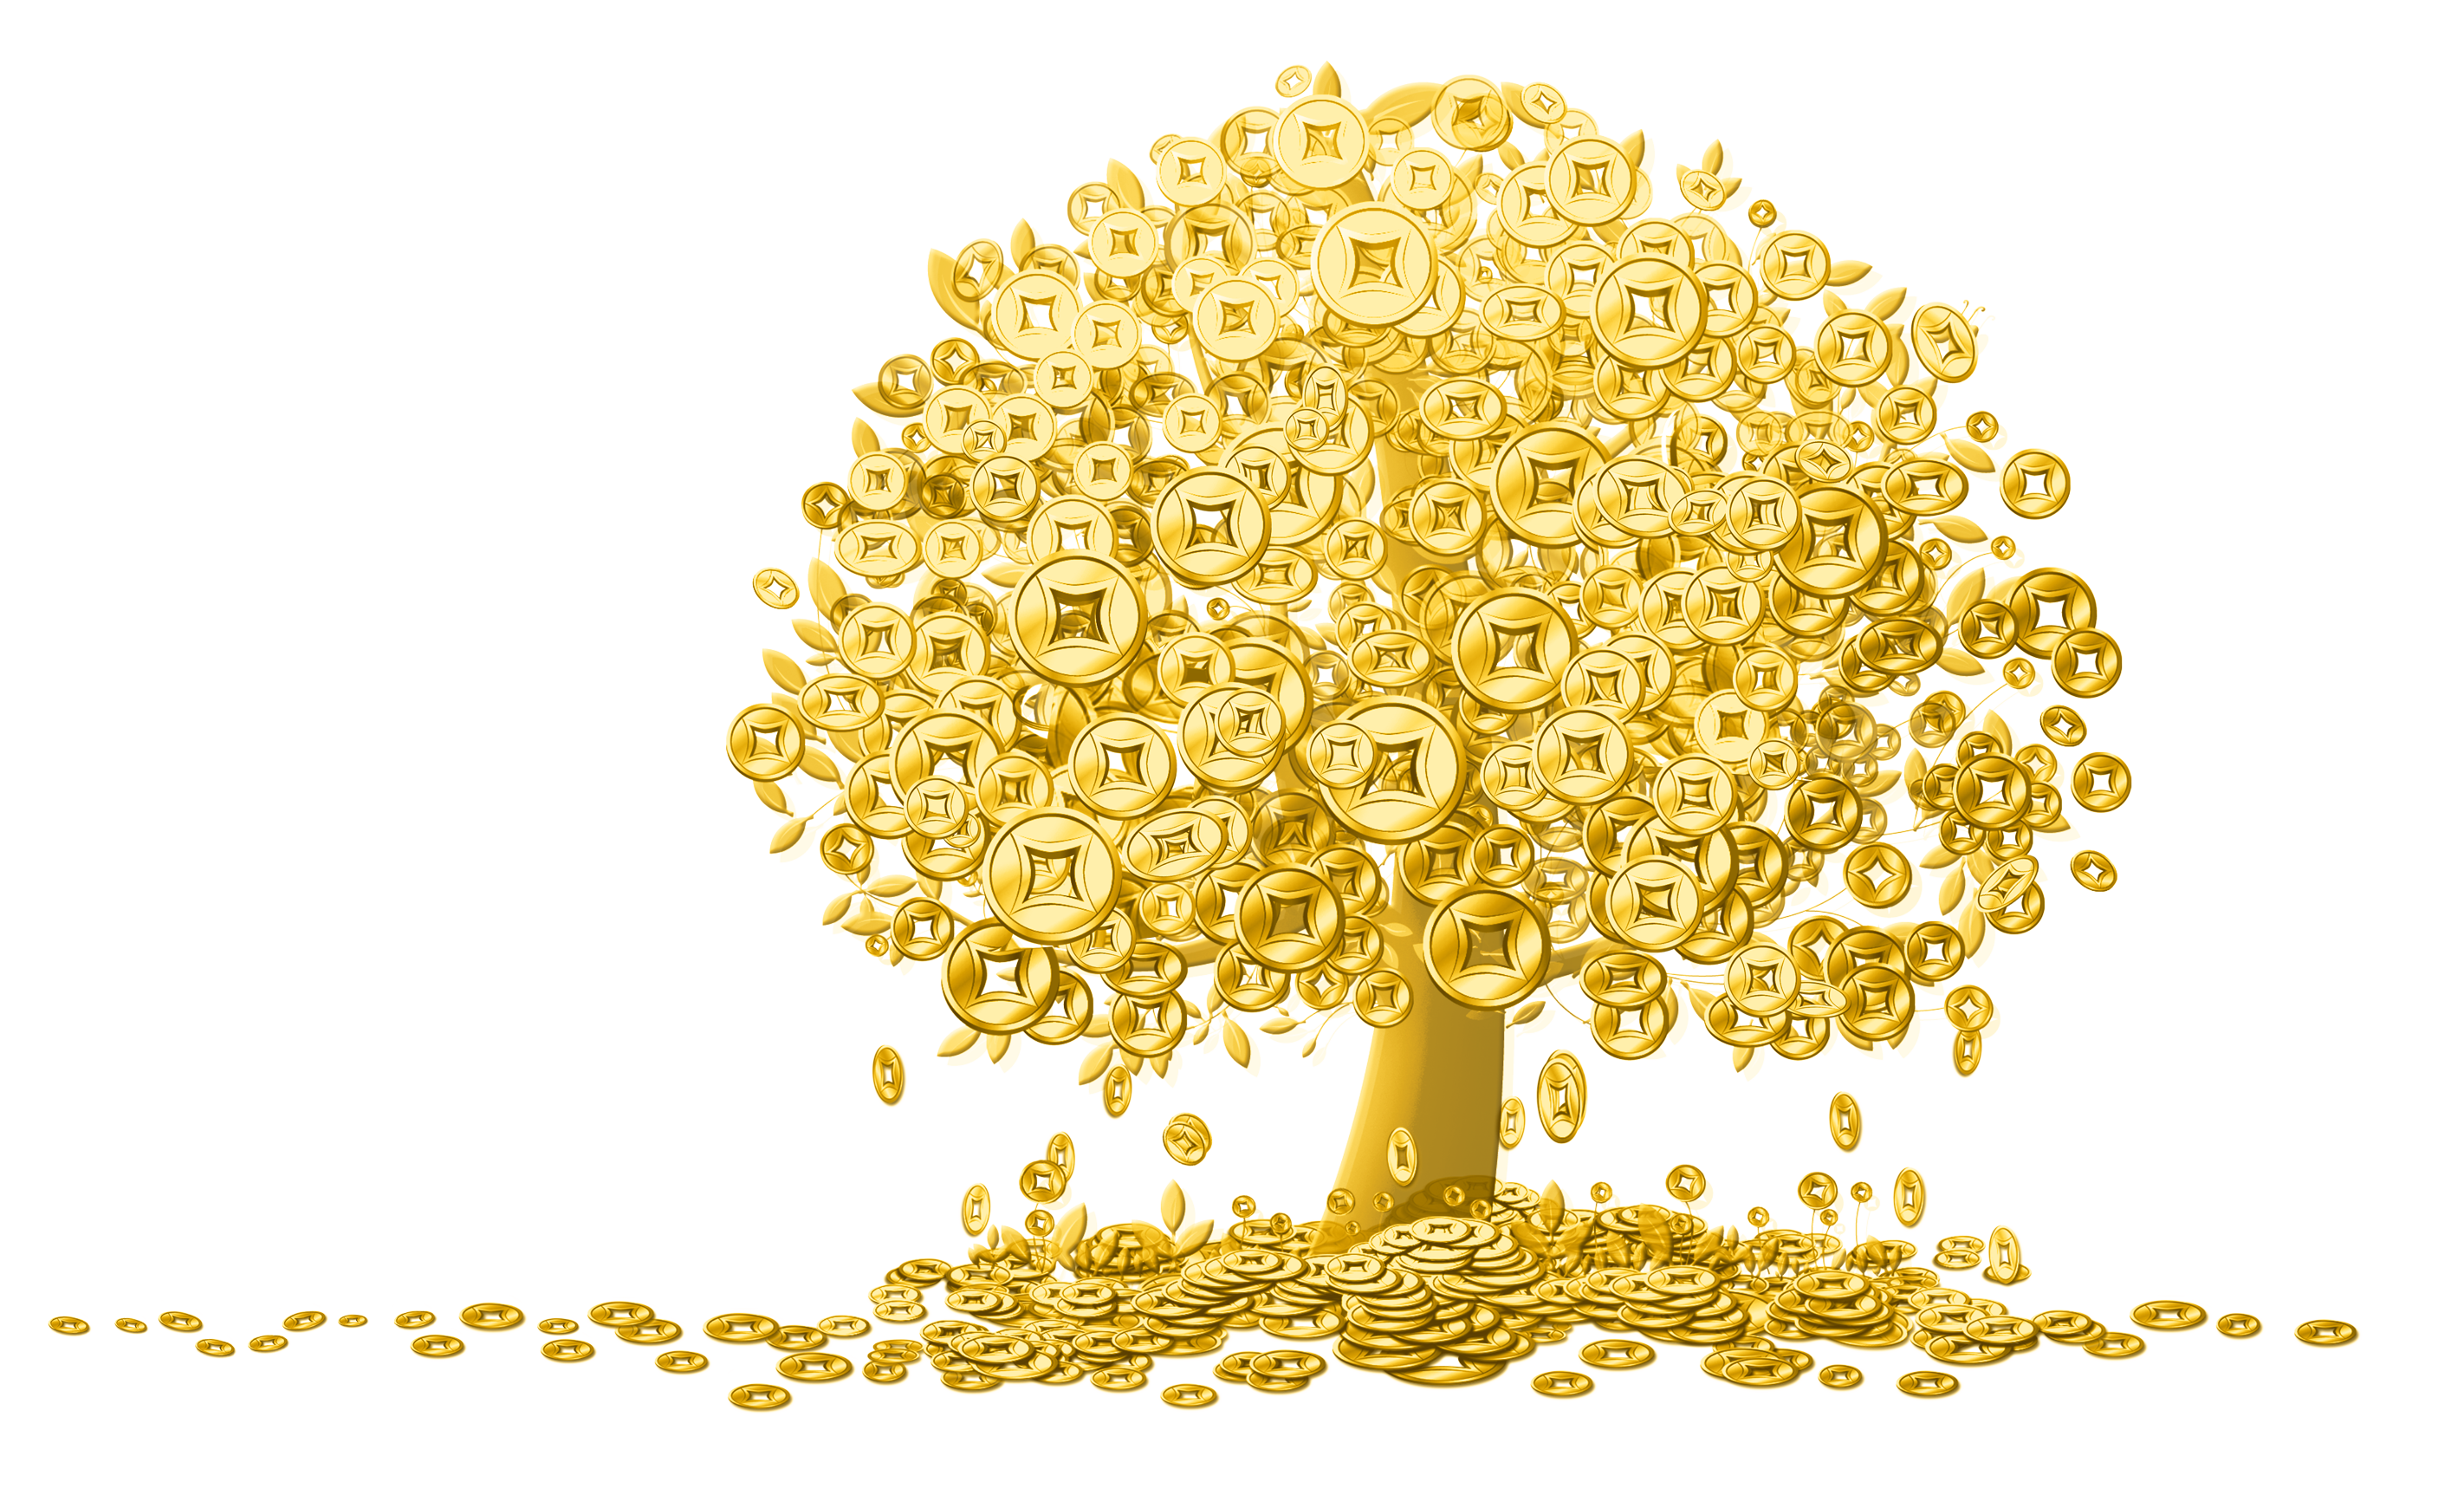 Голд коин дерево. Дерево богатства. Золотое денежное дерево. Денежное дерево с золотыми монетами.